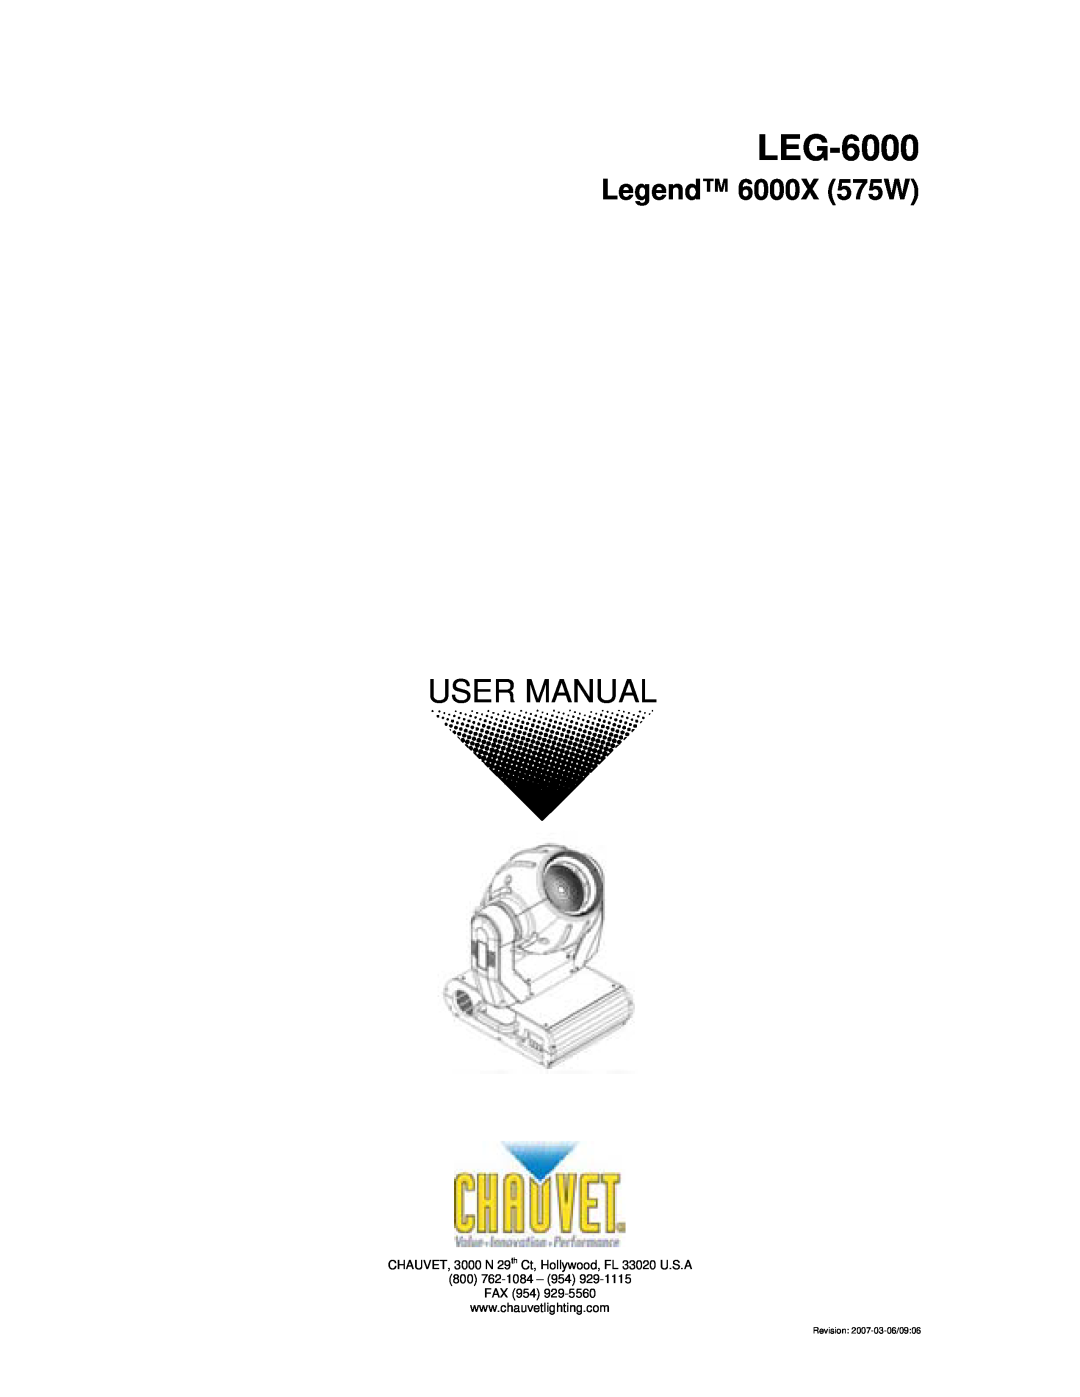 Chauvet user manual LEG-6000, Legend 6000X 575W, Revision 2007-03-06/09 